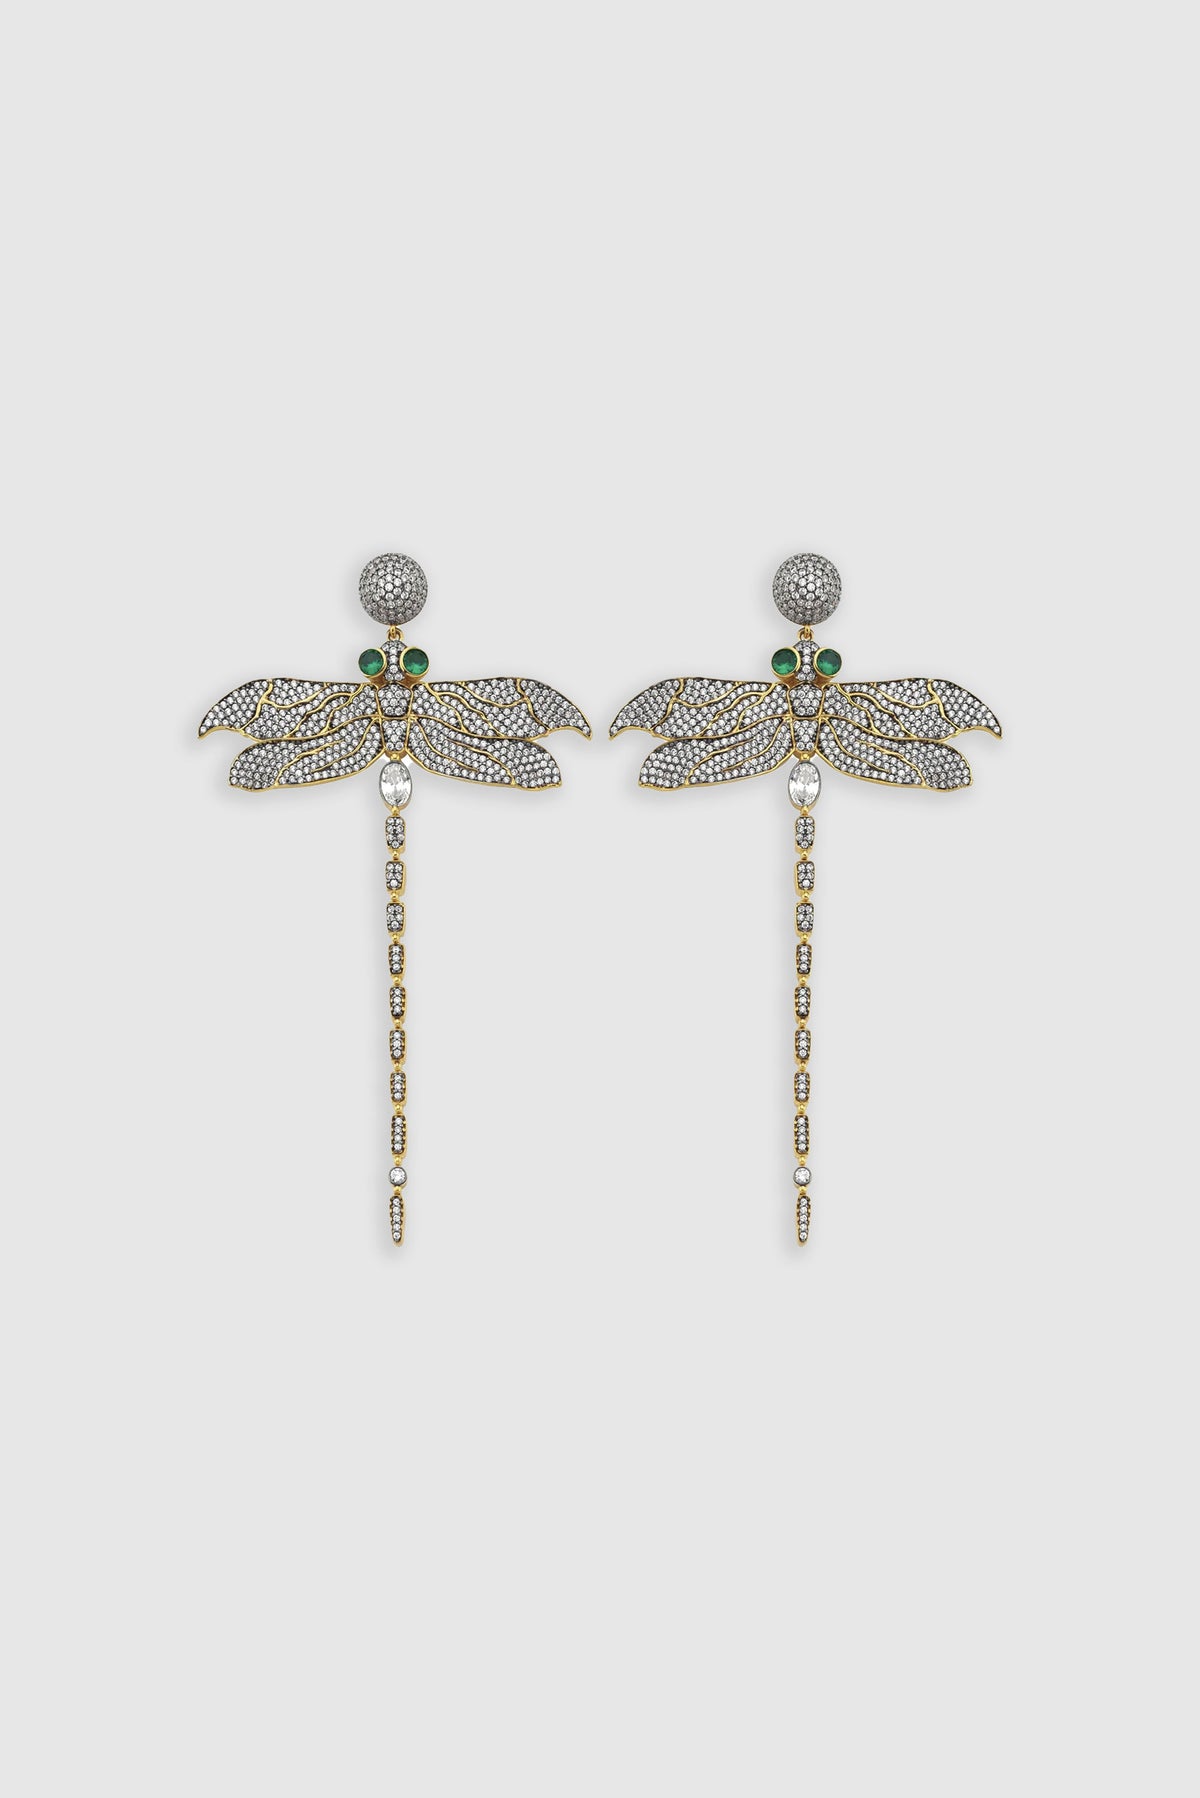 Begüm Khan Dragonfly Earrings